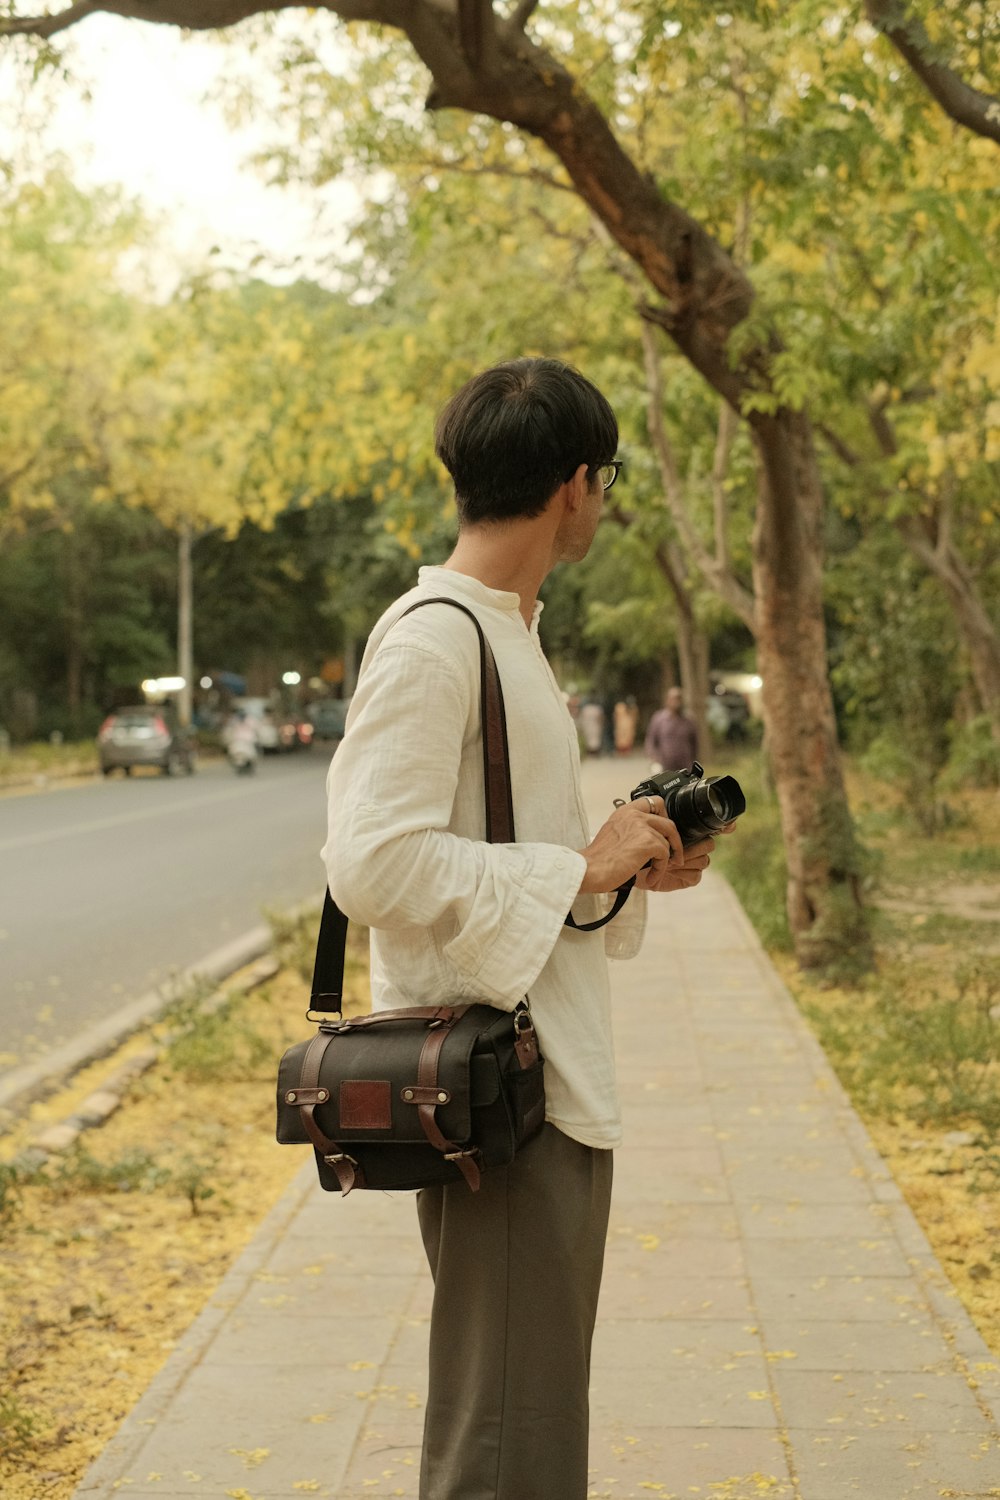 Un hombre parado en una acera sosteniendo una cámara